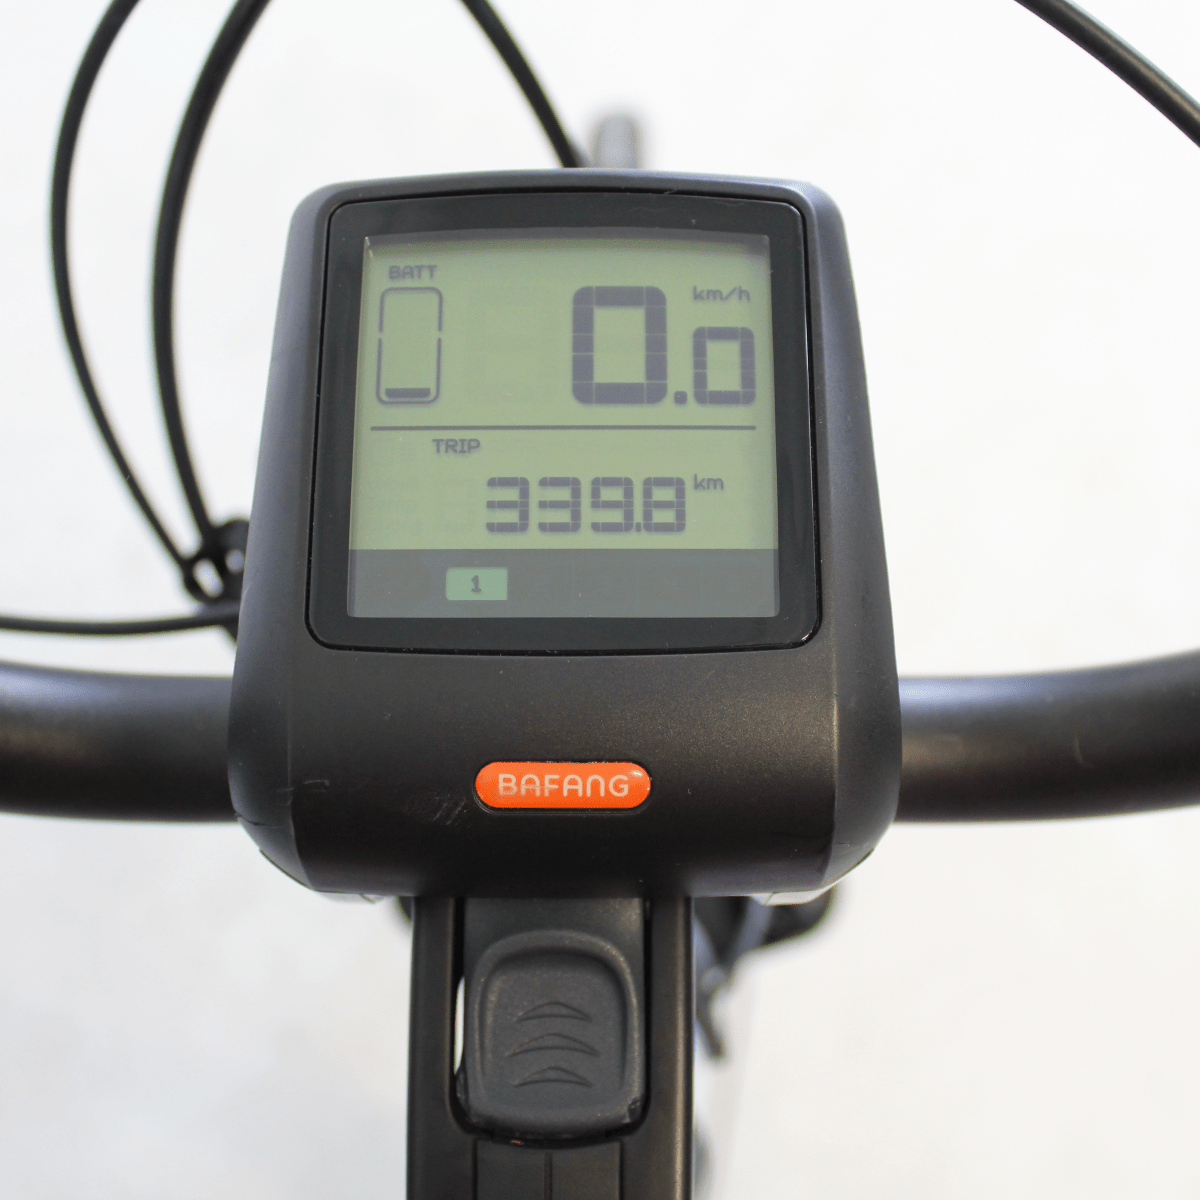 Vélo électrique reconditionné Devron 28426 gris | LOEWI